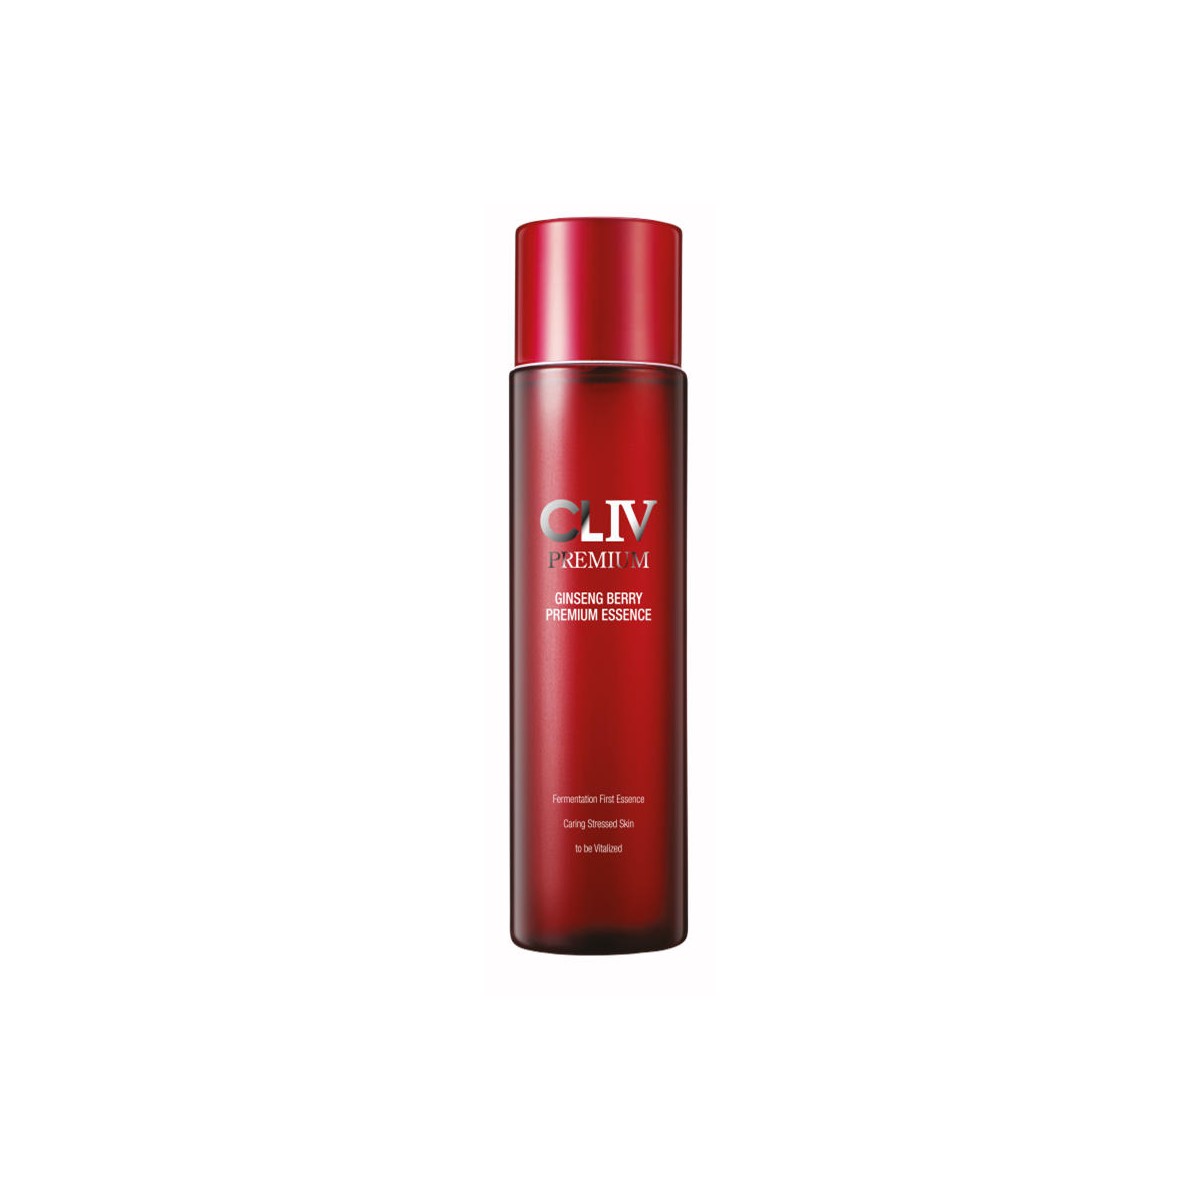 Esencia al mejor precio: CLIV Premium Ginseng Berry Premium Essence de CLIV en Skin Thinks - Piel Sensible